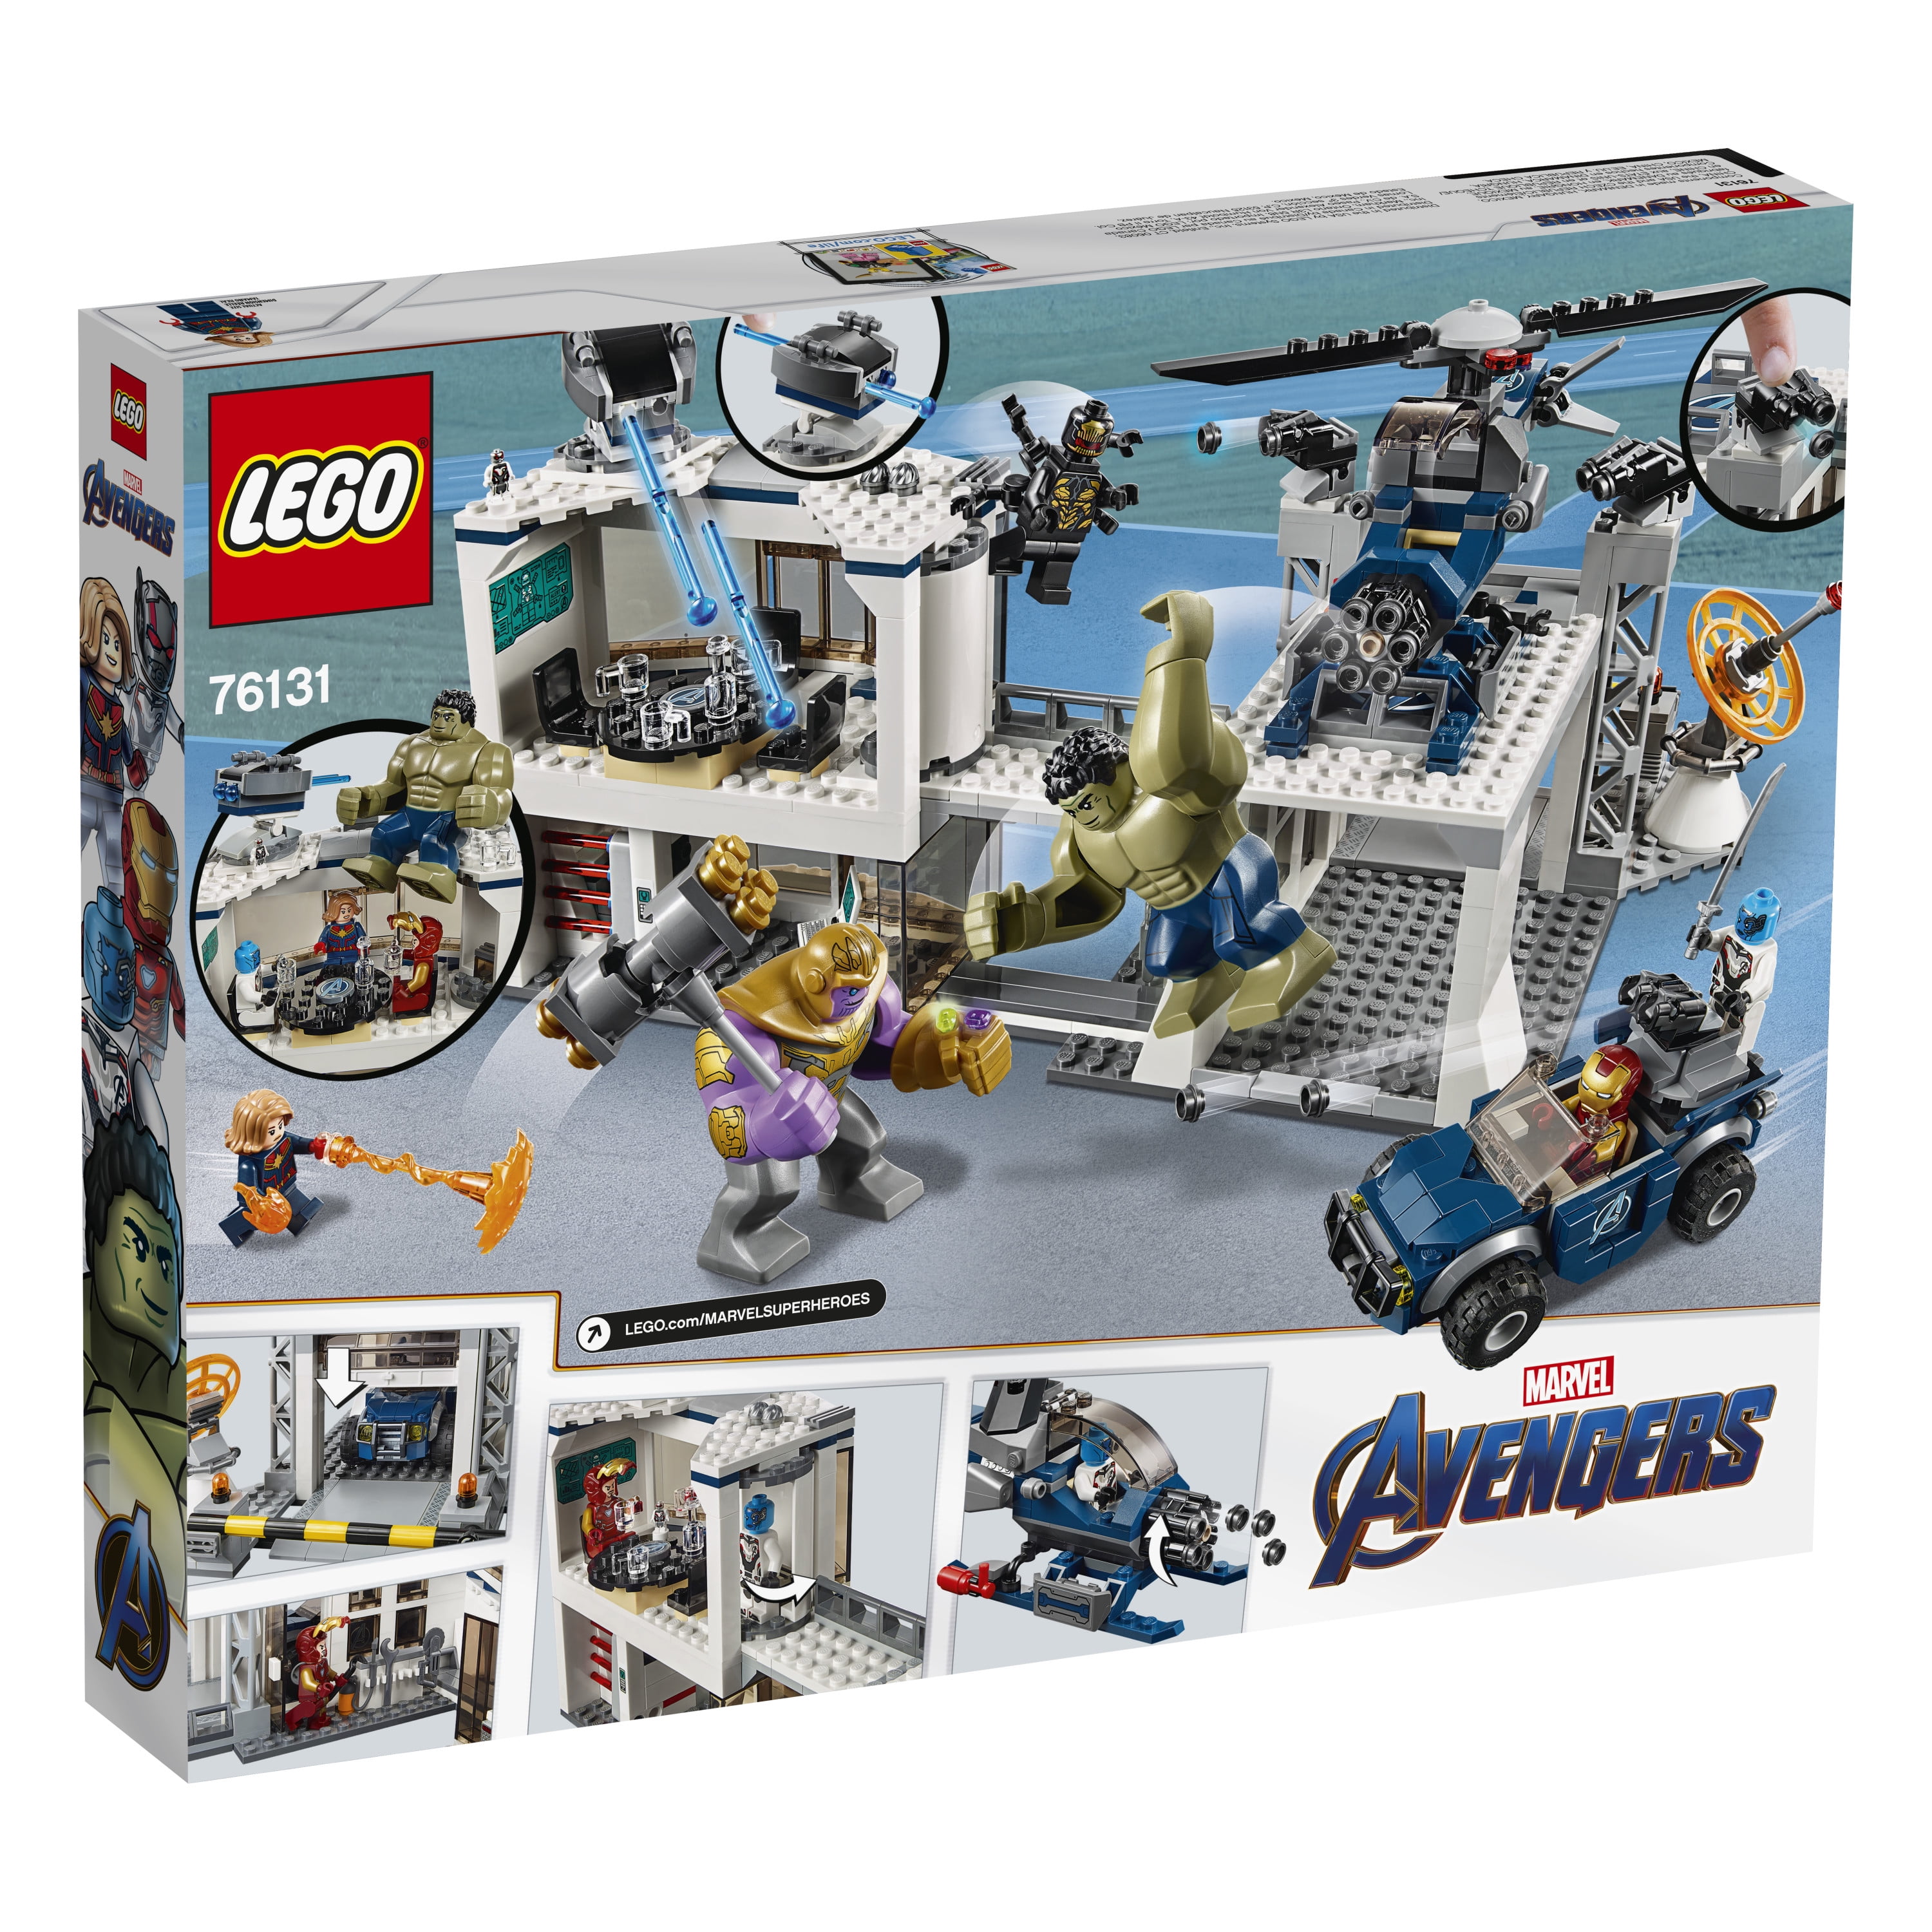 modbydeligt Nysgerrighed undersøgelse LEGO Marvel Avengers Compound Battle 76131 Building Set (699 pieces) -  Walmart.com